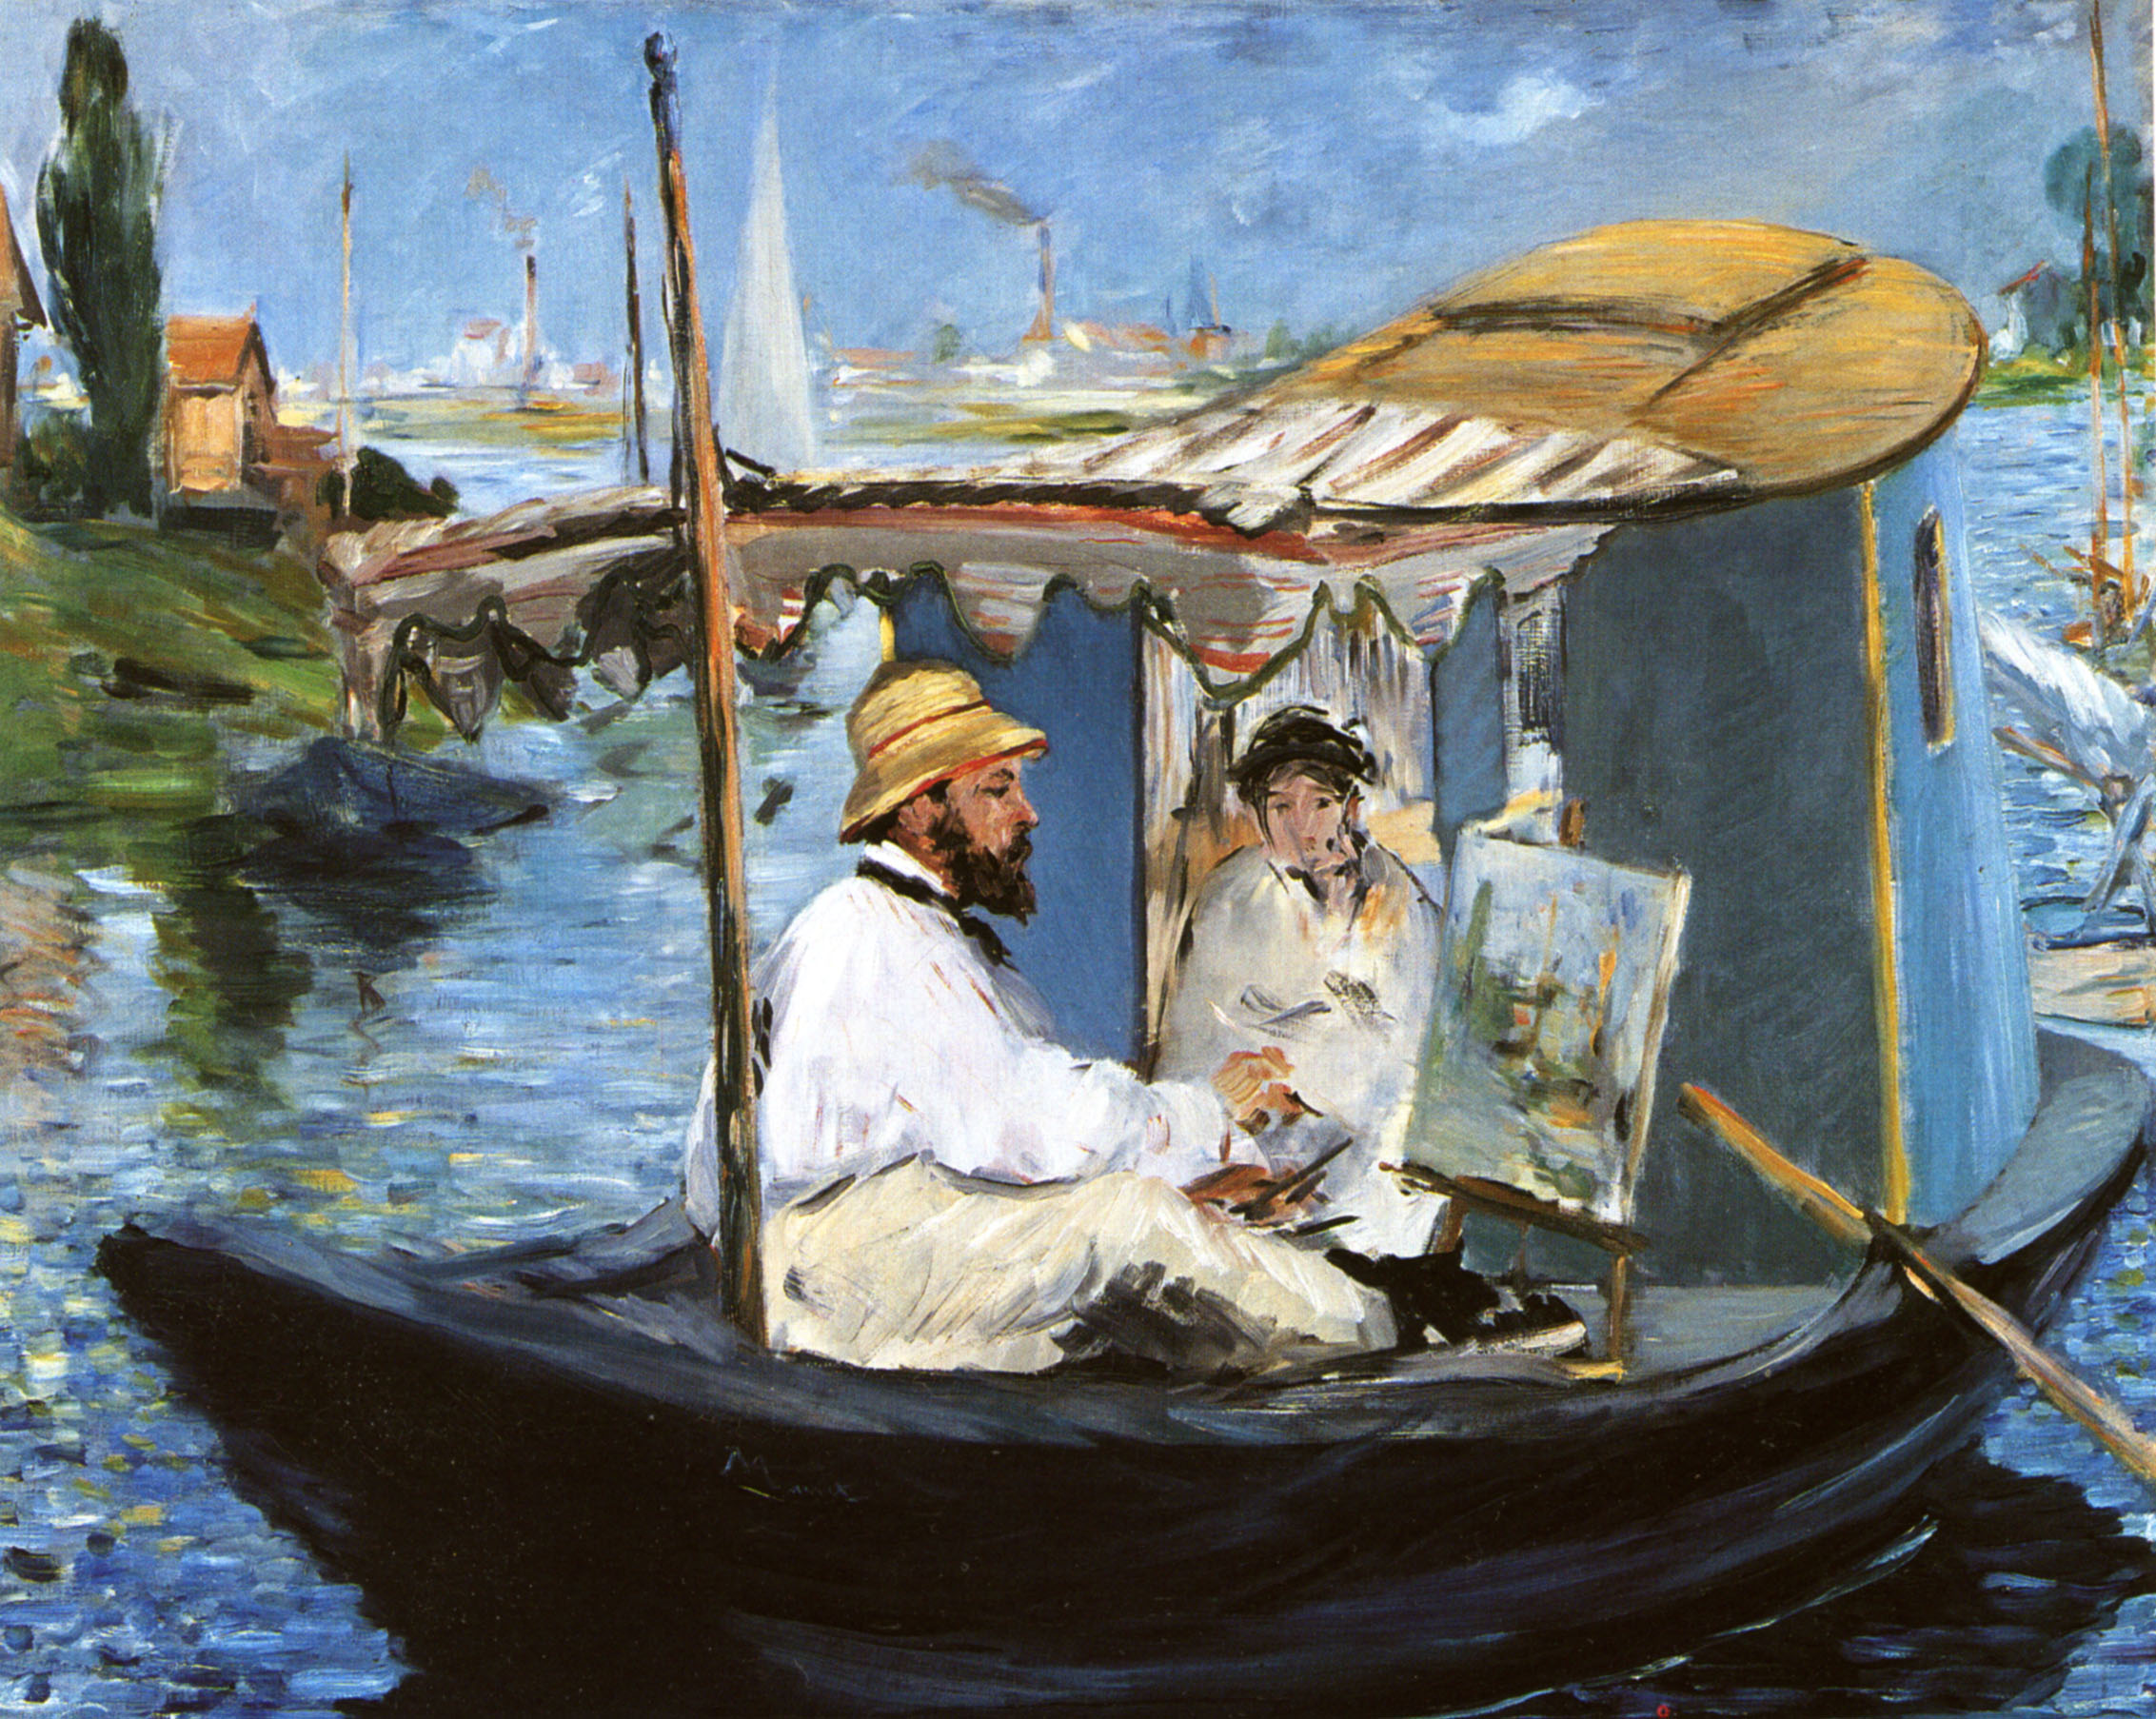 Эдуард Мане. "Клод Моне в лодке". 1874.